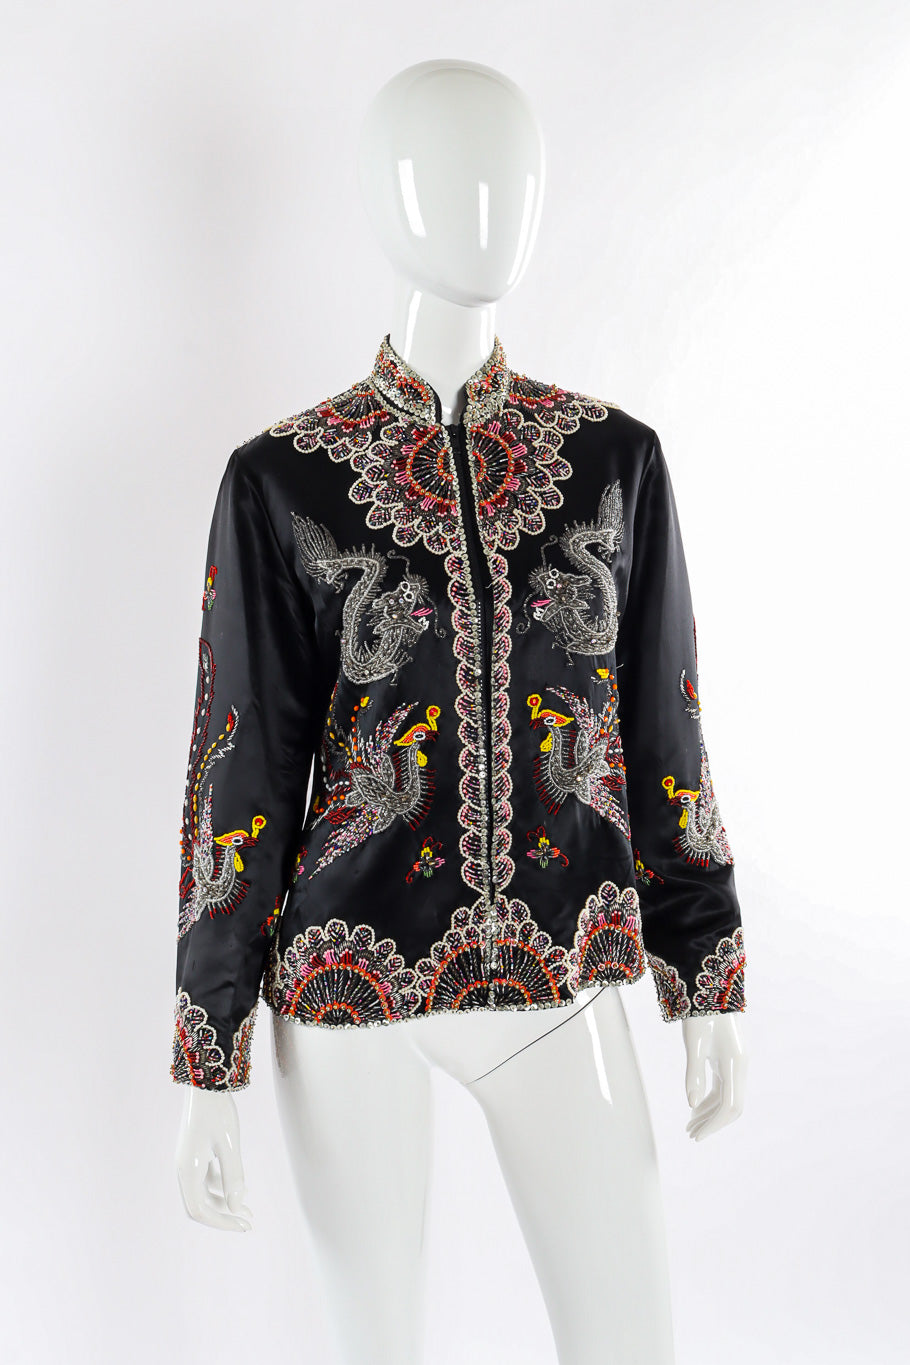 Vintage Dynasty Dragon Phoenix Embellished Silk Jacket front on mannequin @recessla